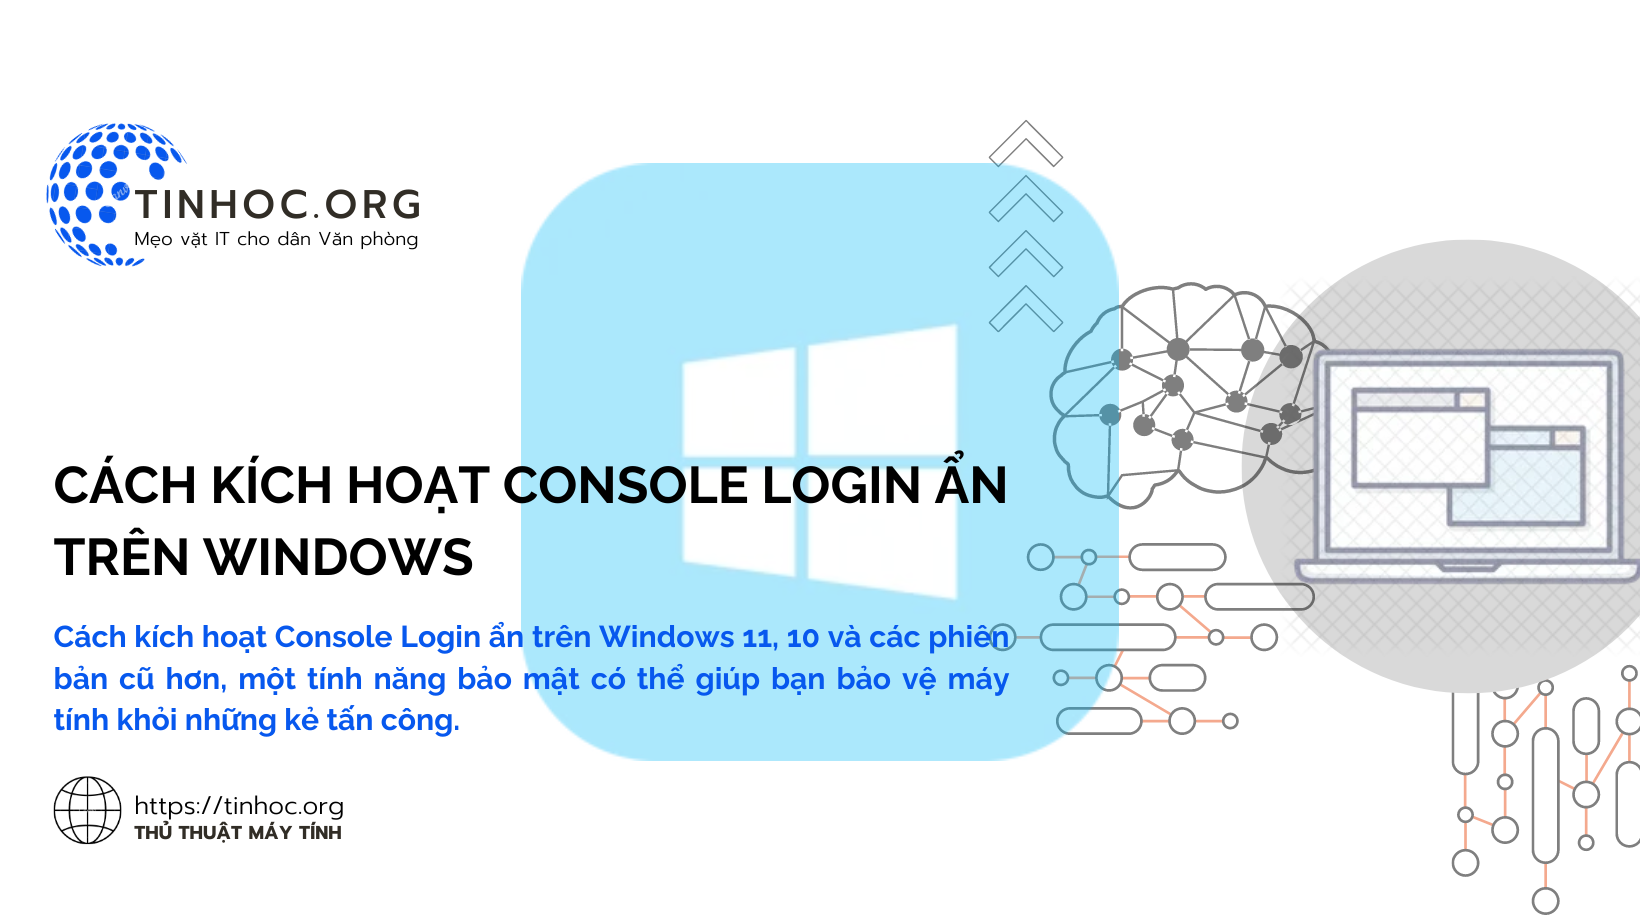 Cách kích hoạt Console Login ẩn trên Windows 11, 10 và các phiên bản cũ hơn, một tính năng bảo mật có thể giúp bạn bảo vệ máy tính khỏi những kẻ tấn công.